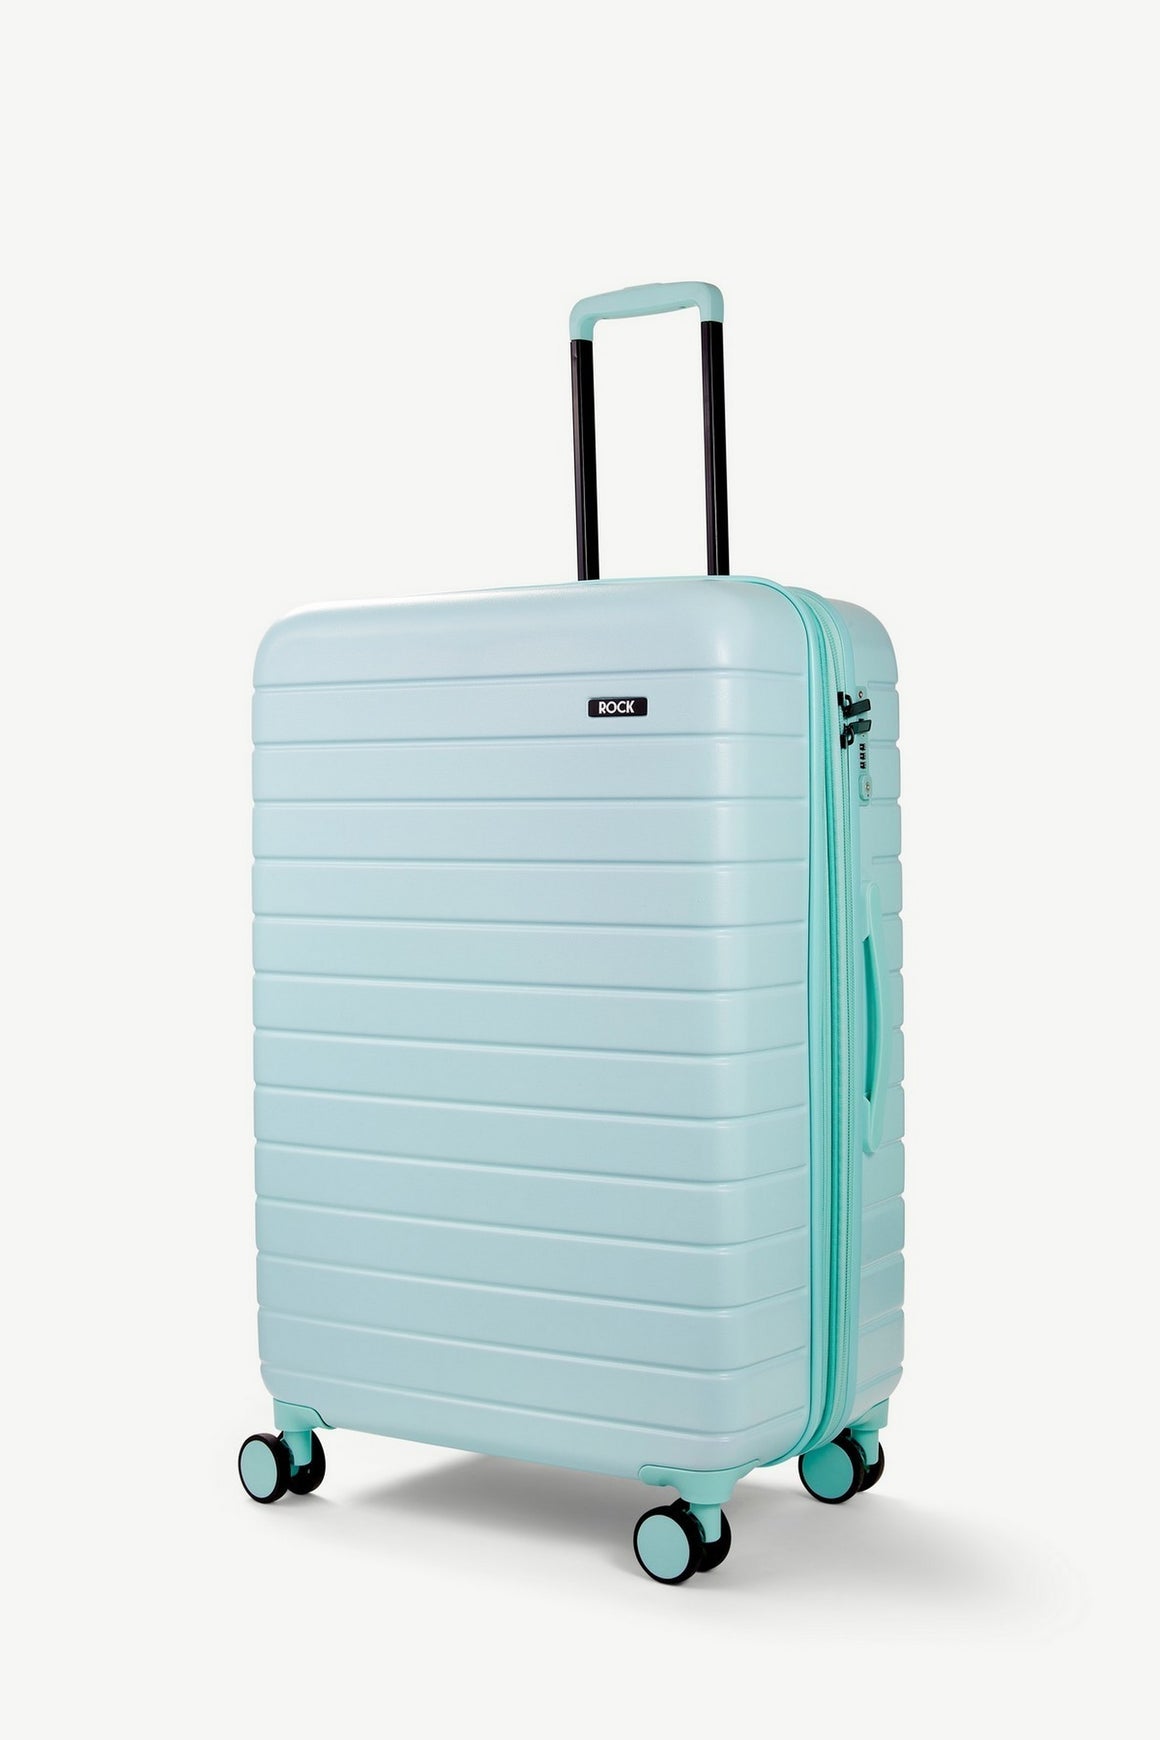 Novo Large Suitcase